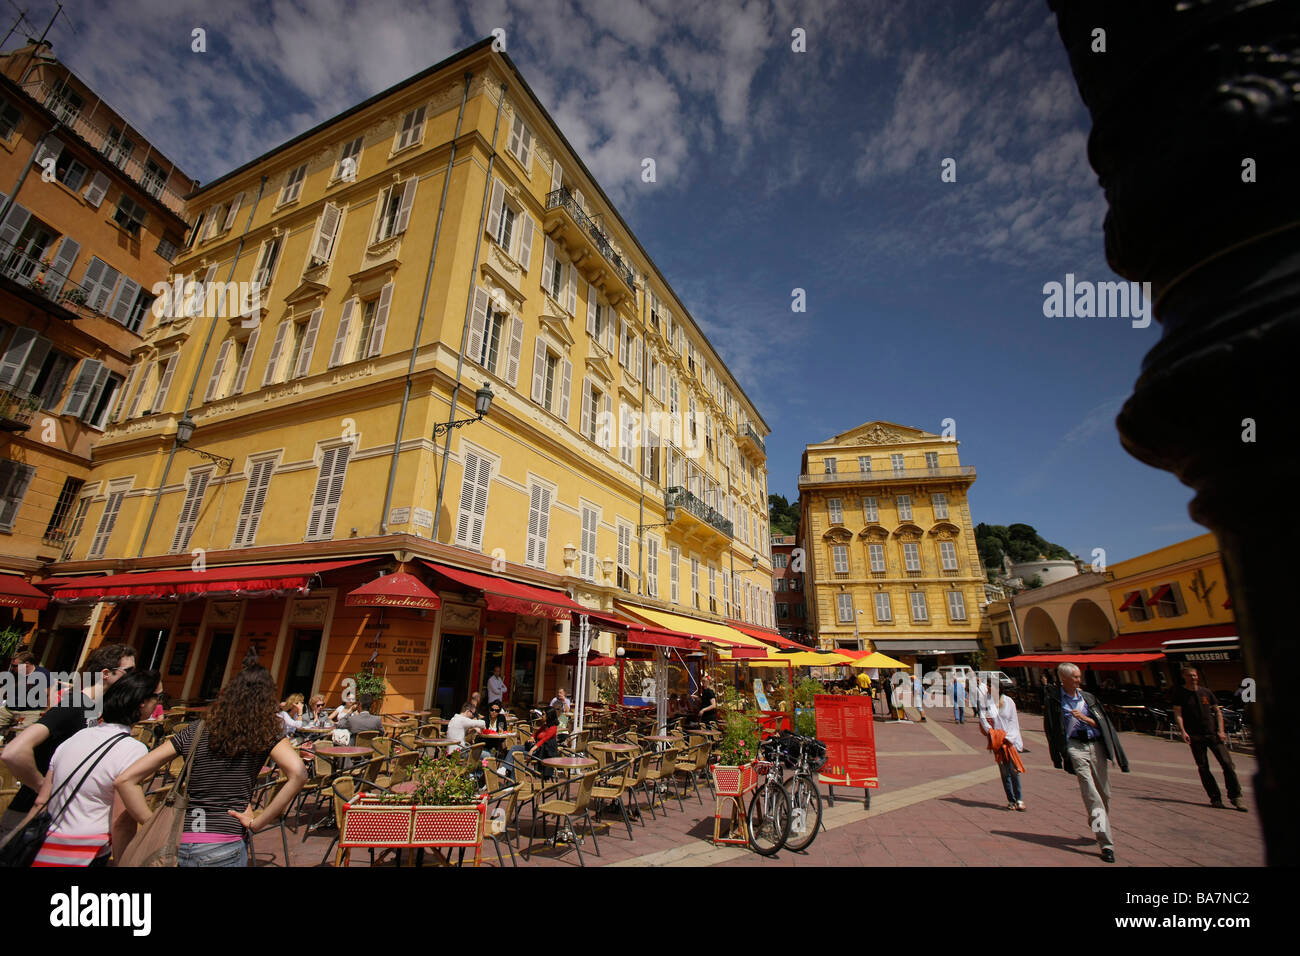 Restaurants and cafes at Marche aux Fleurs, Nice, Cote d'Azur, Provence, France Stock Photo